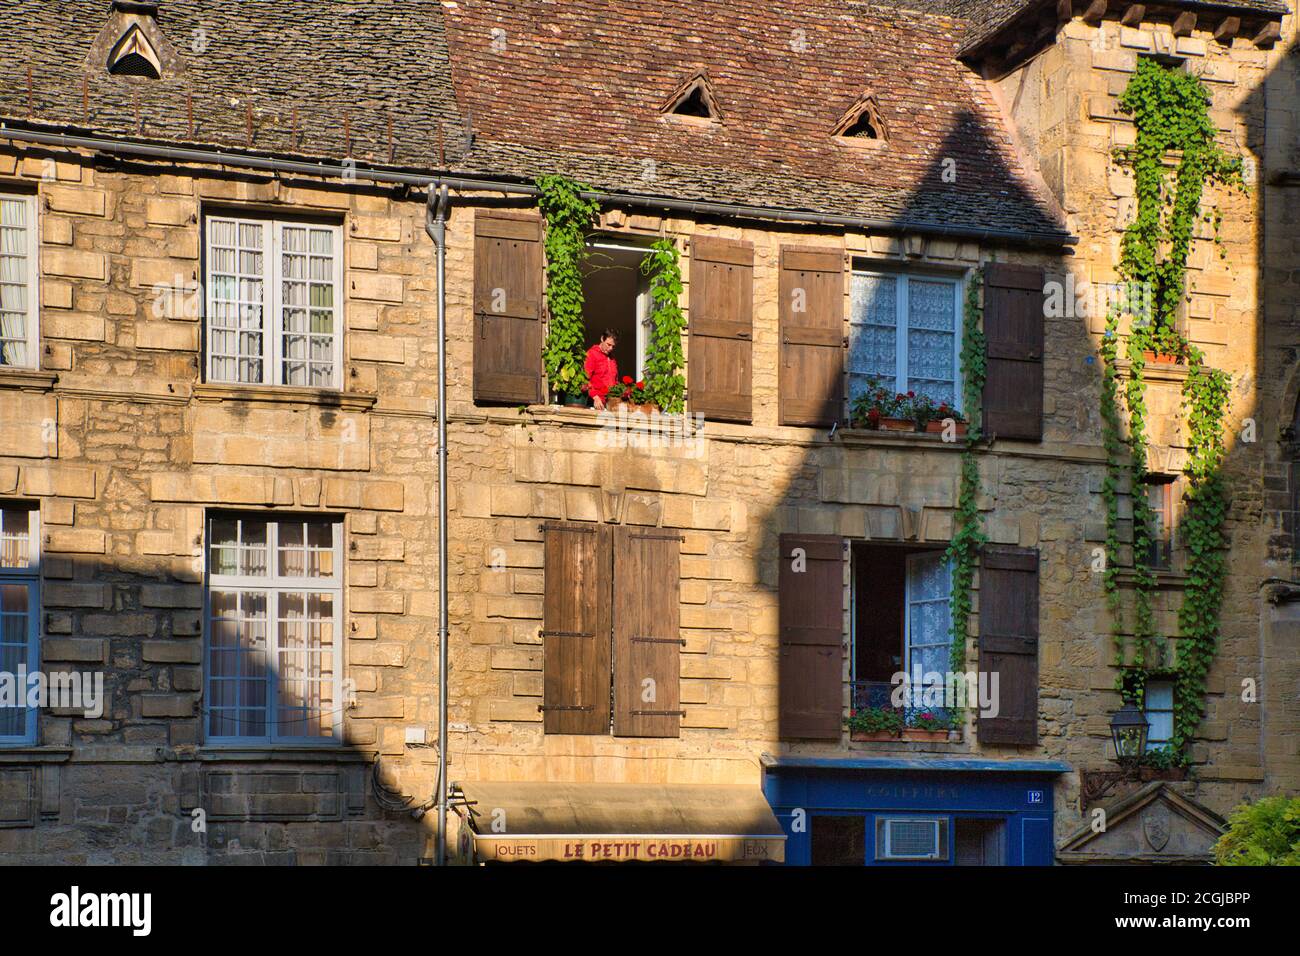 Una persona in maglietta rossa incorniciata nella finestra aperta della loro casa con fogliame e persiane visibili, Languedoc-Roussillon, Francia Foto Stock